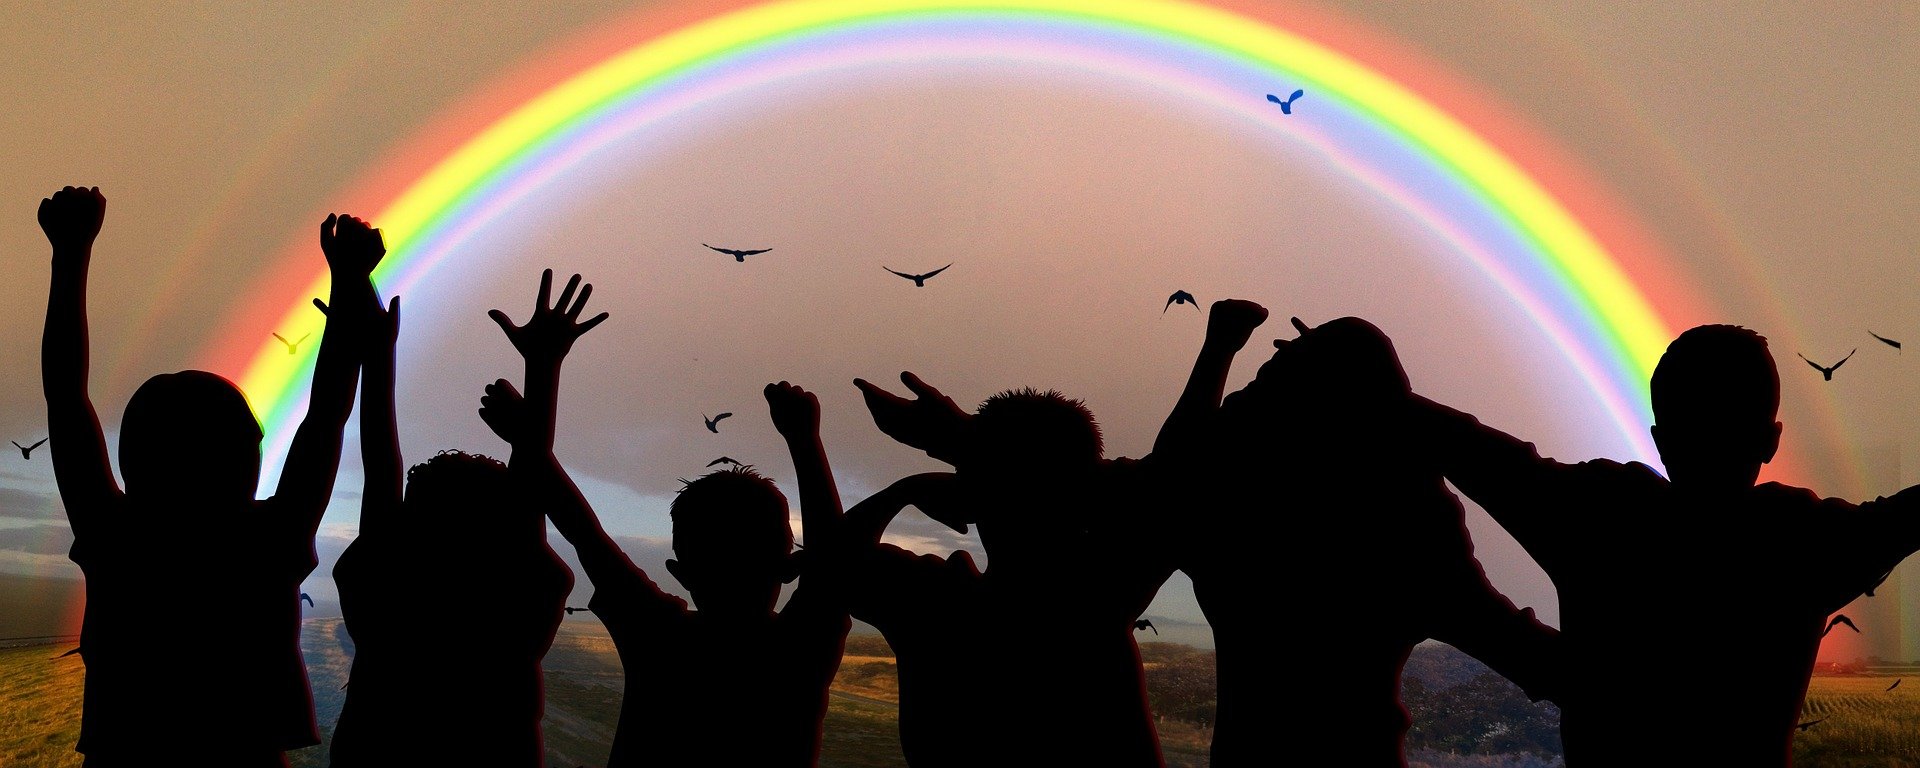 Silhouetten von Kindern, die vor einem Regenbogen stehen